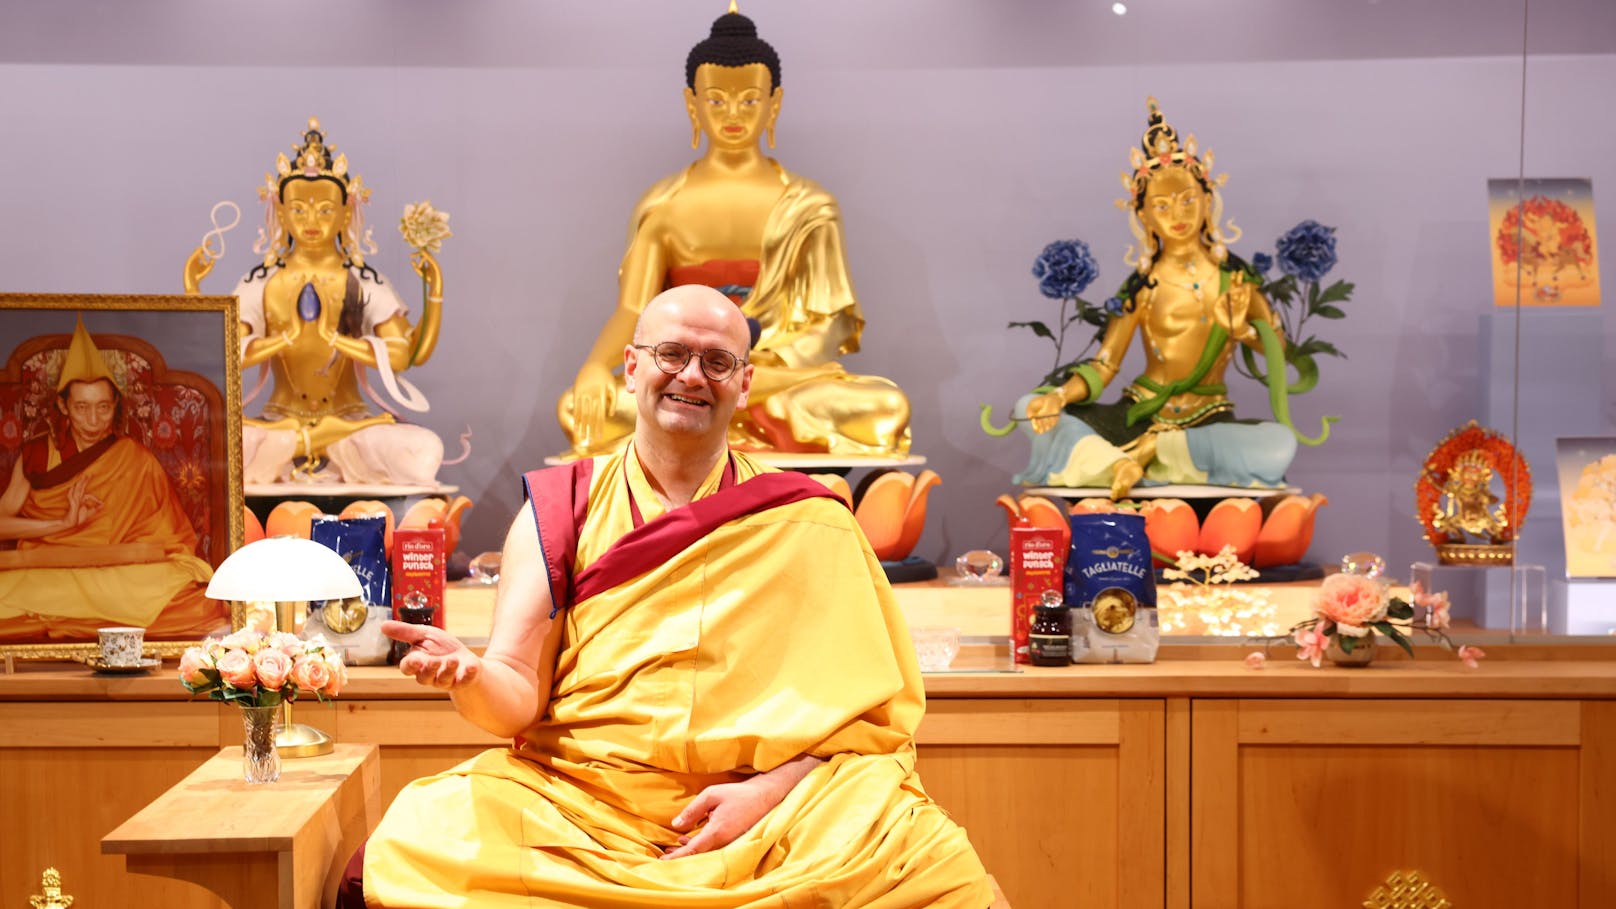 Wiener Mönch: "Meditation rettete mich aus Depression"